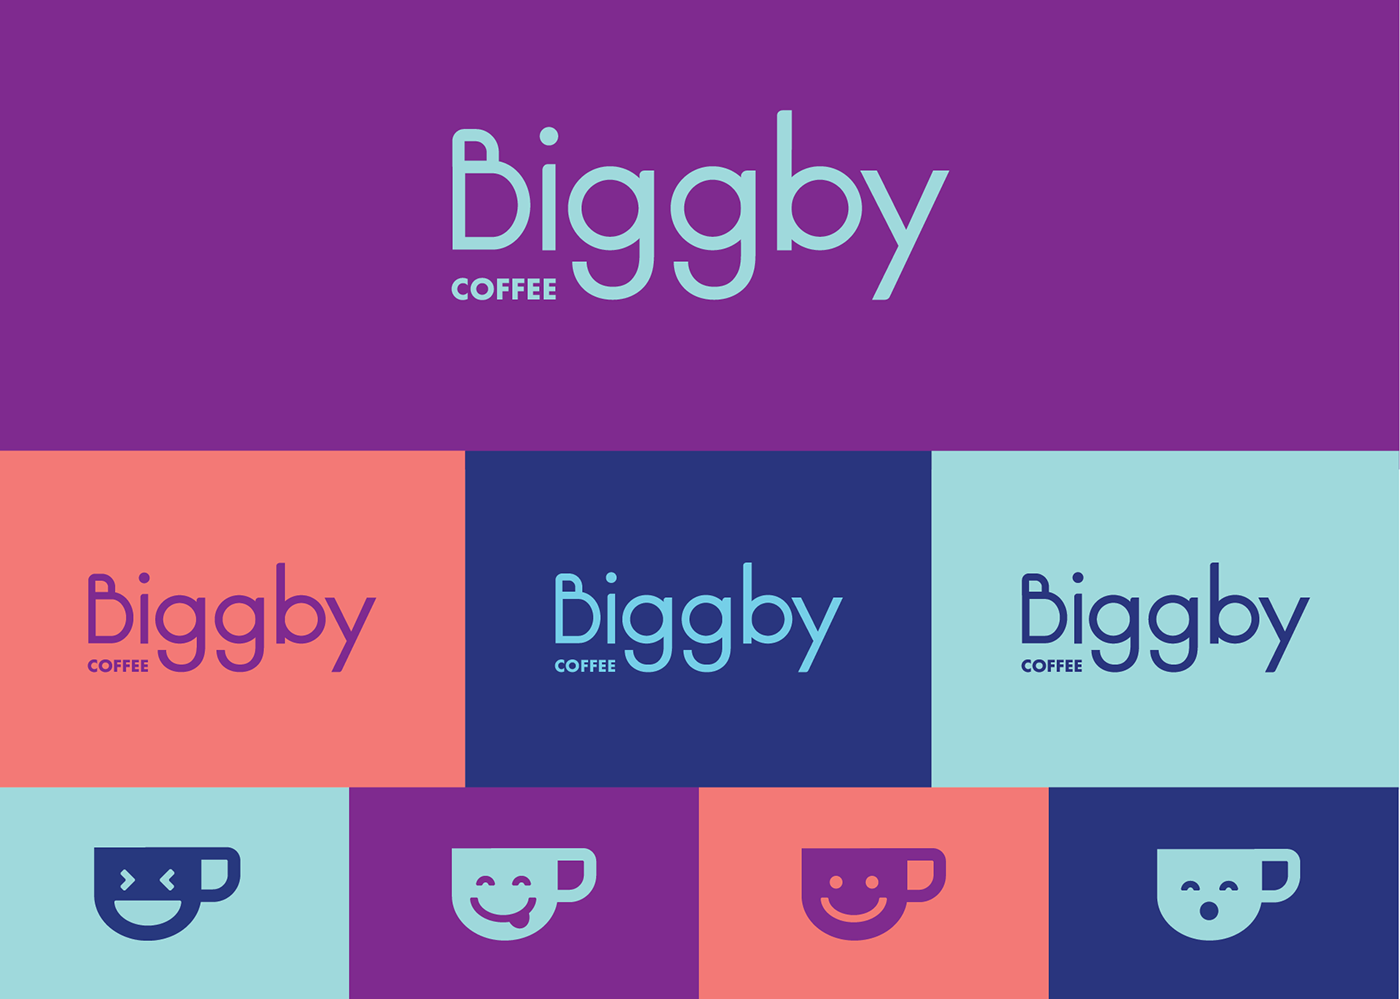 Coffee Biggby Rebrand Fun app design Web Design  color ad campaign Merch